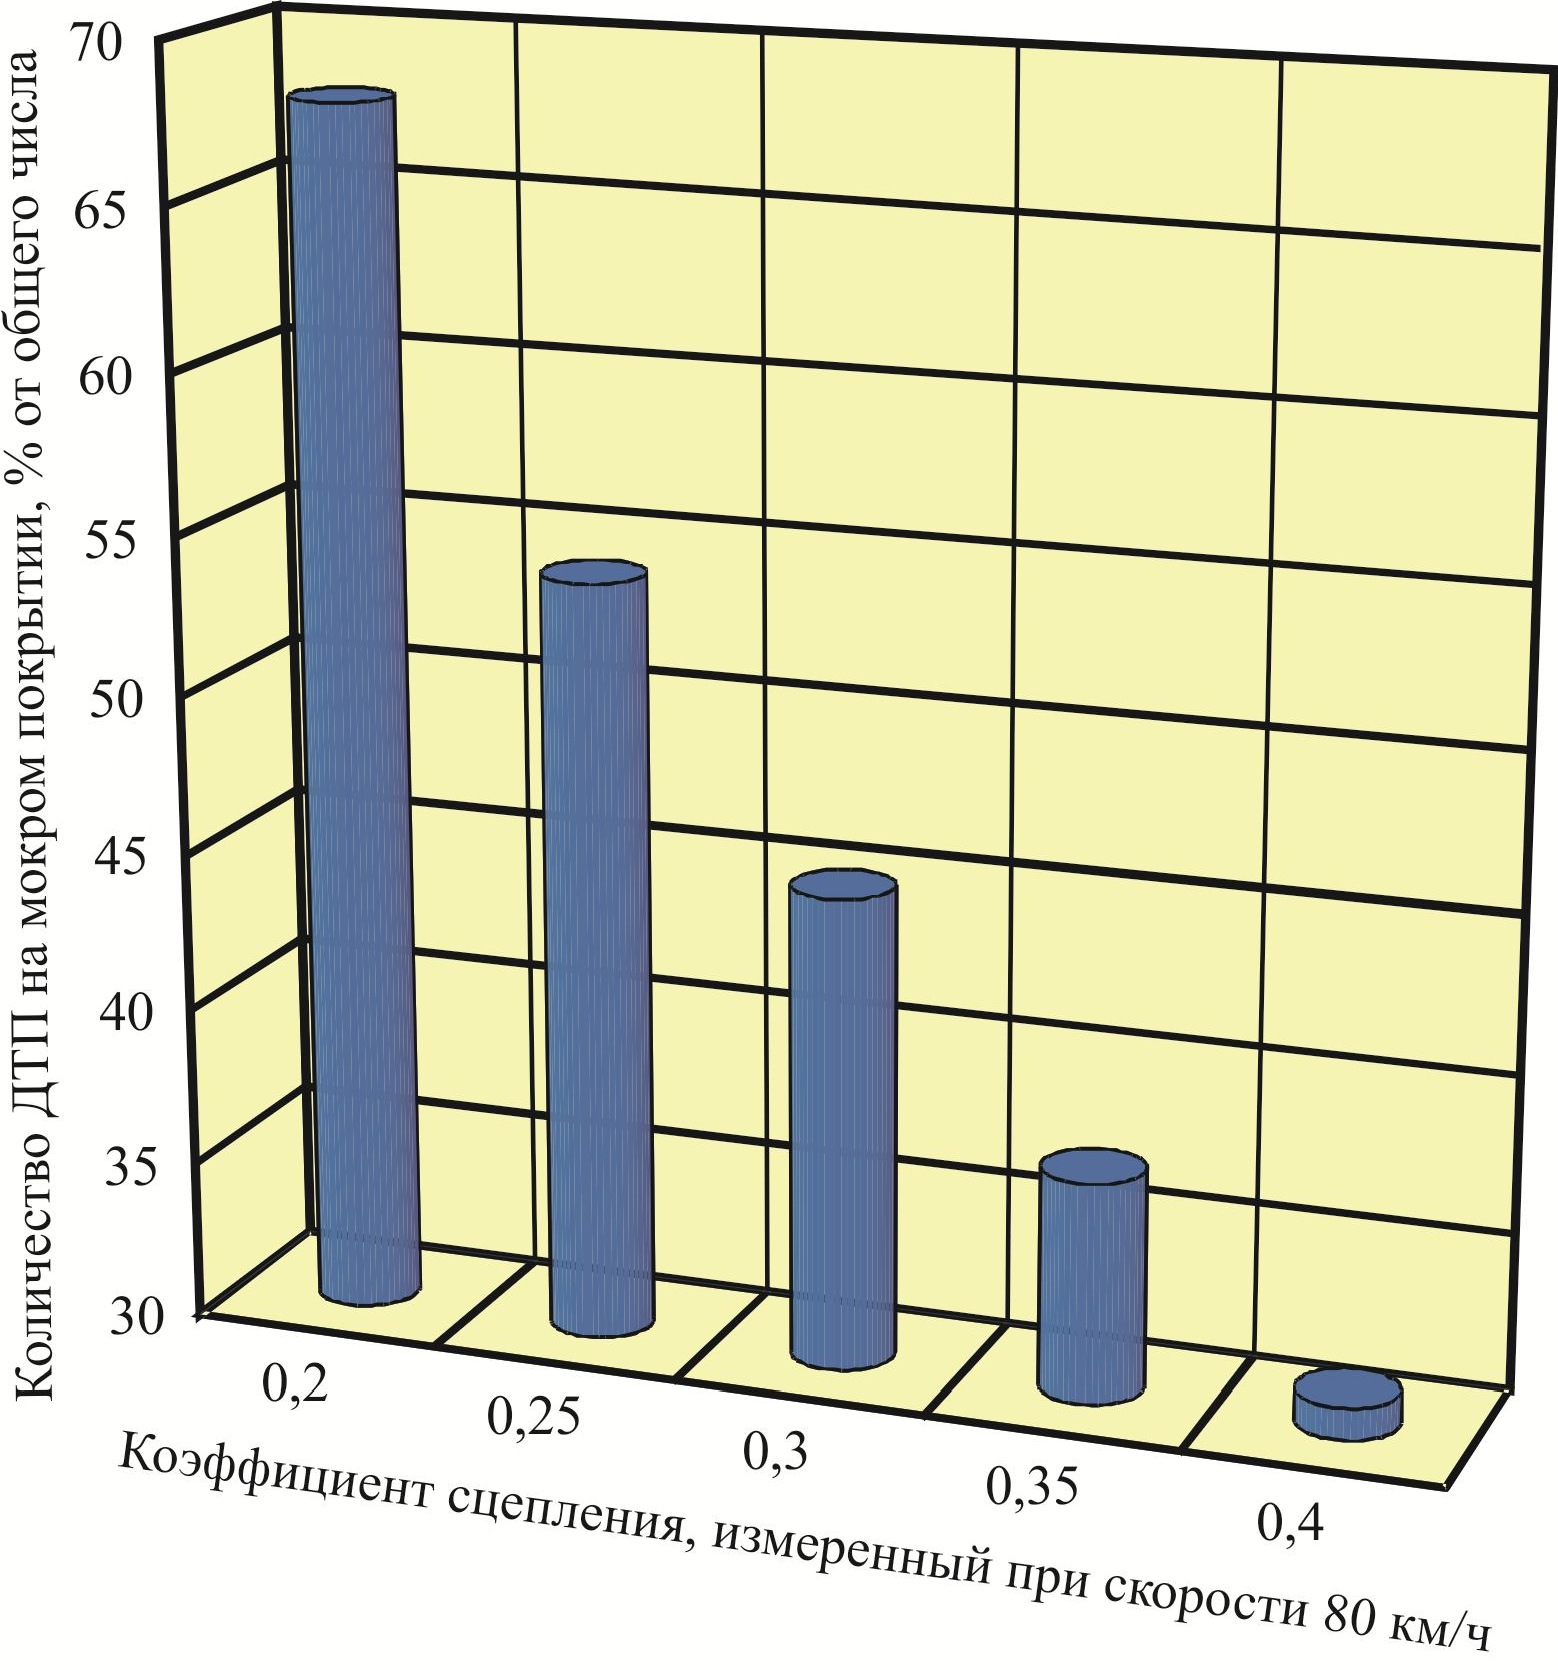 Зависимость количества ДТП на мокрых покрытиях от величины коэффициента сцепления